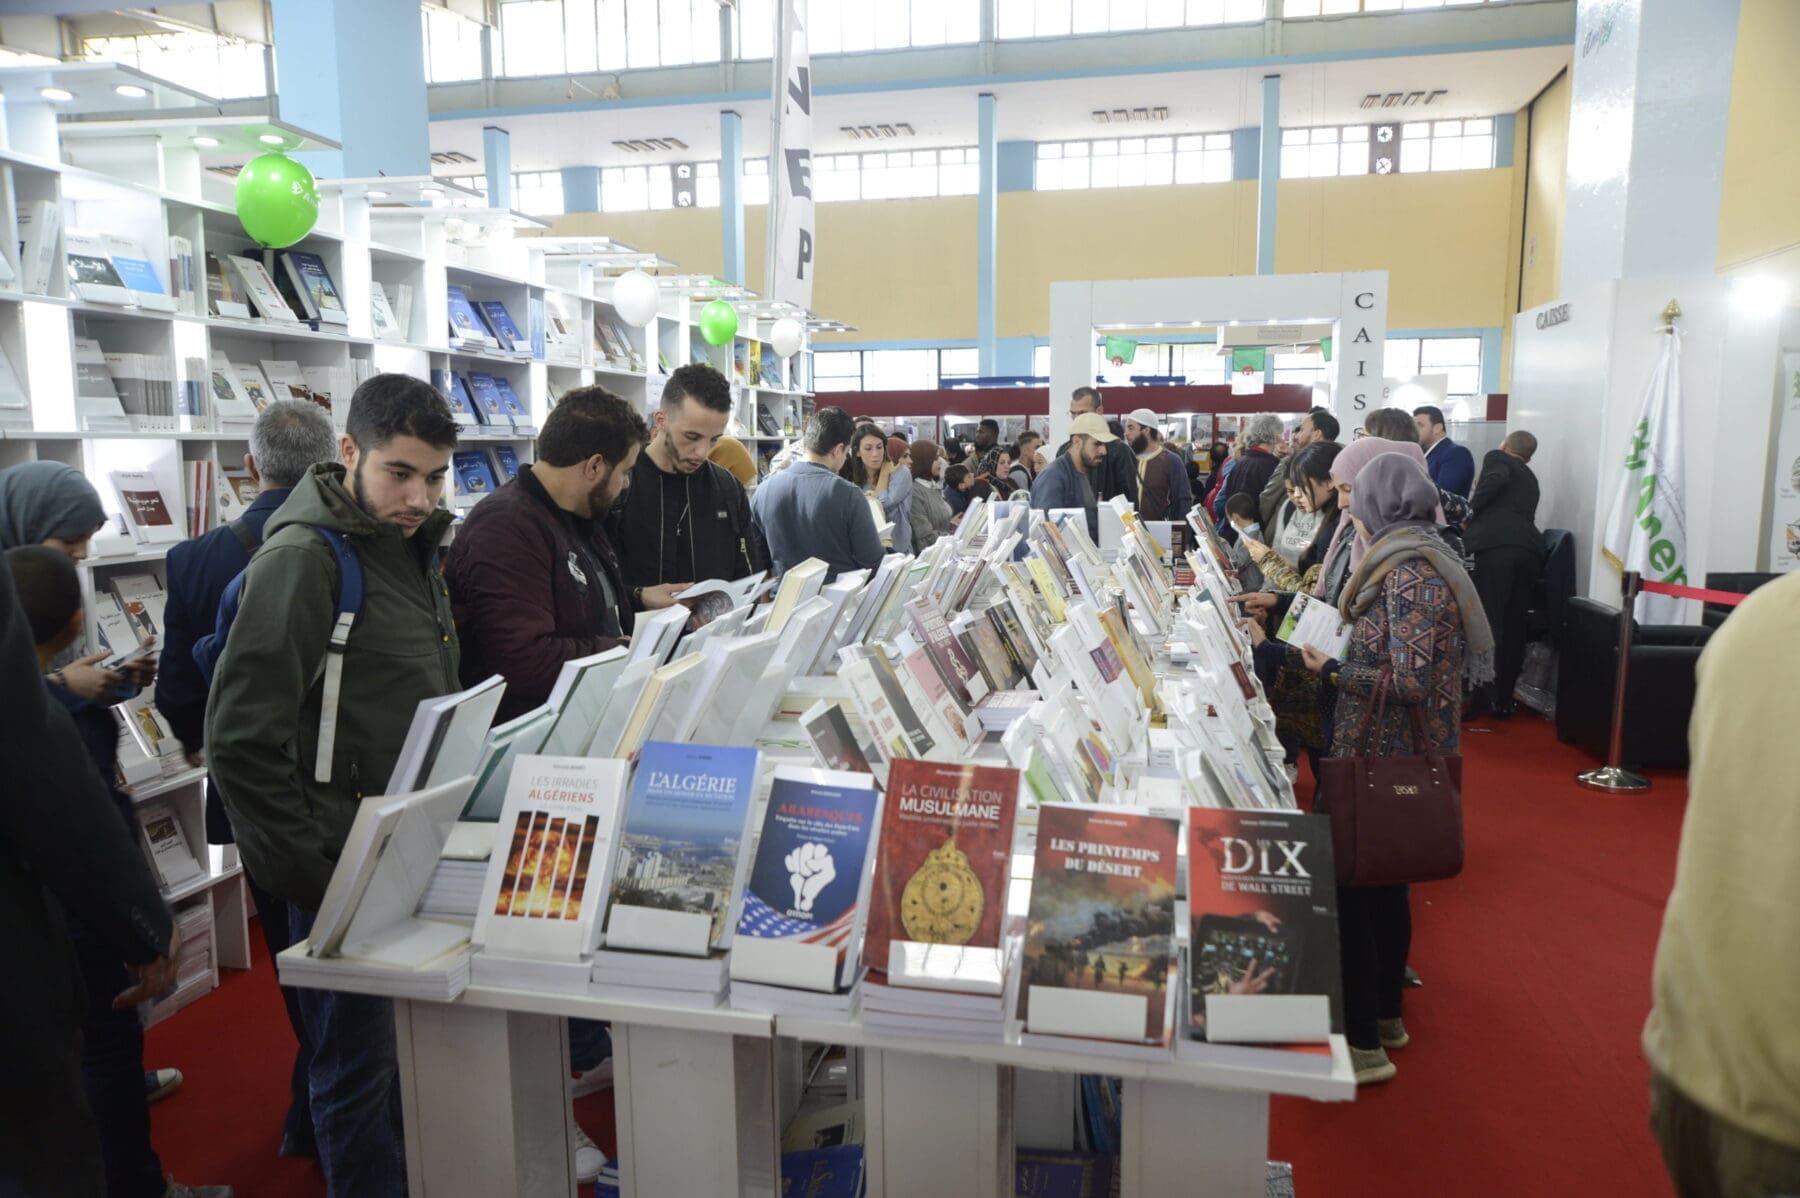 معرض الجزائر الدولي للكتاب